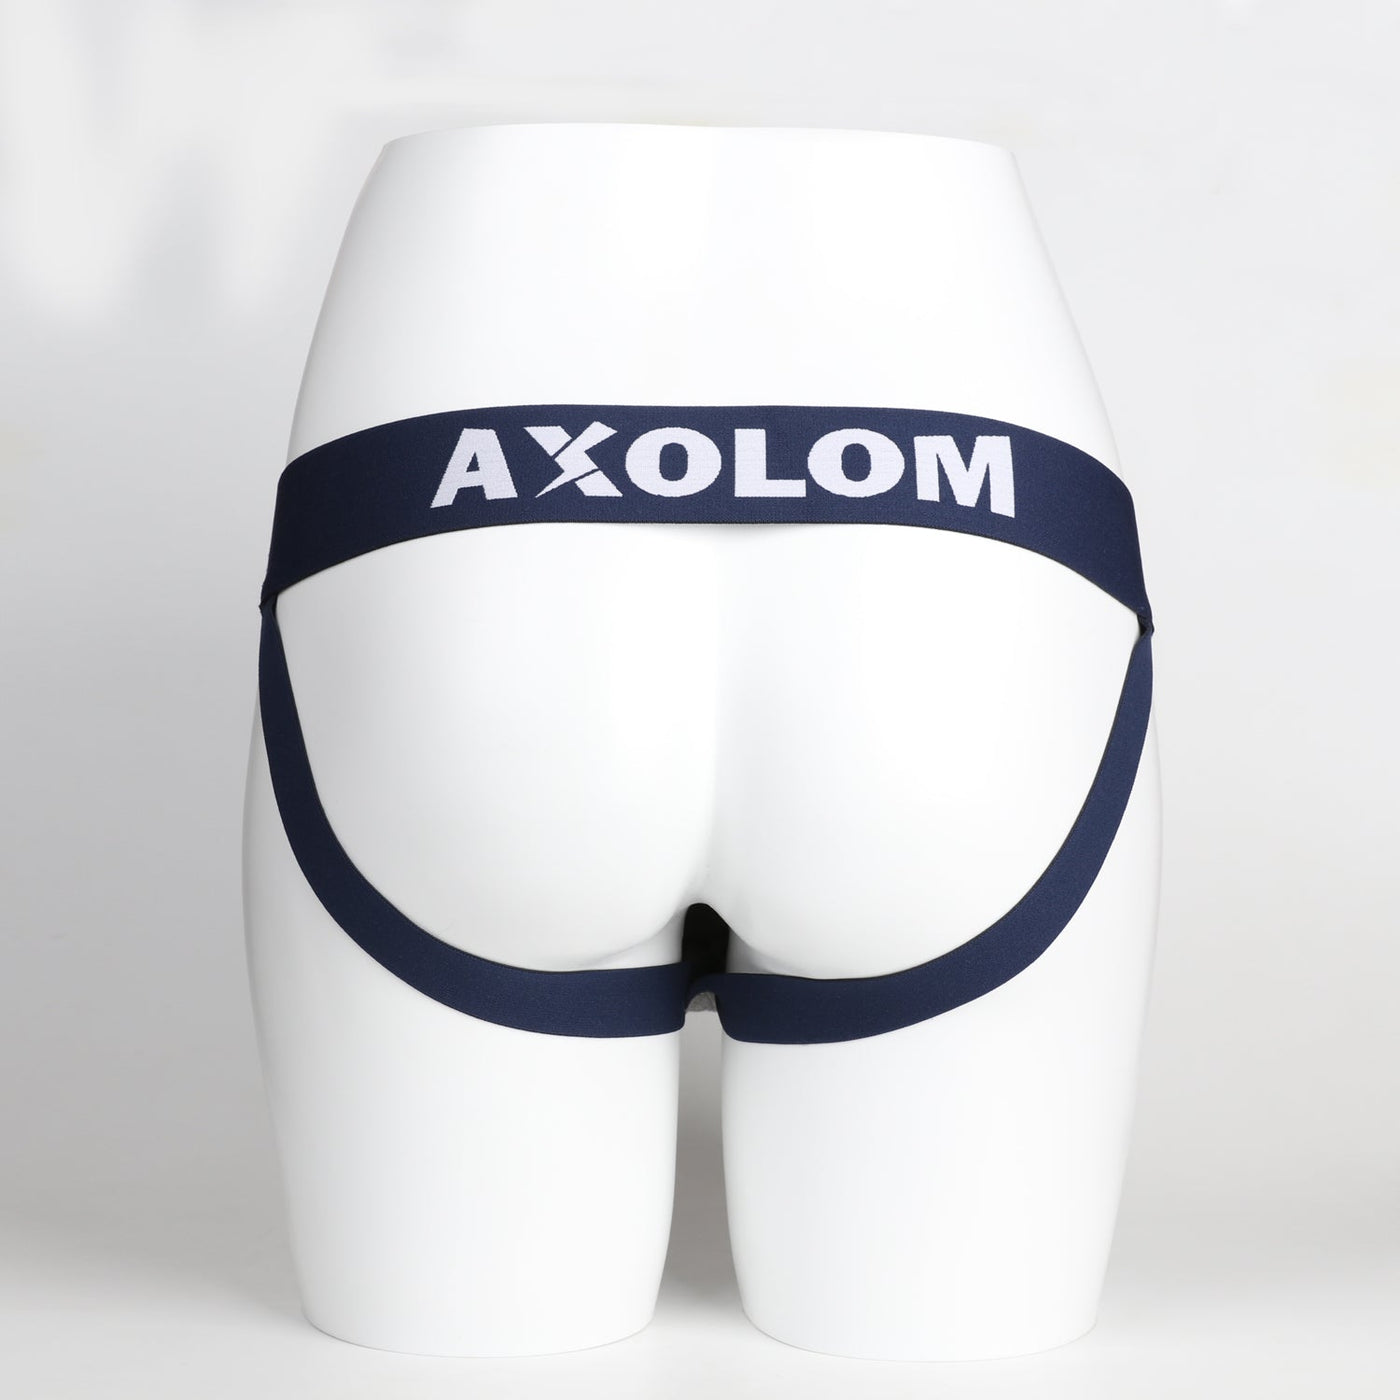 AXOLOM Jockstrap - Axolom